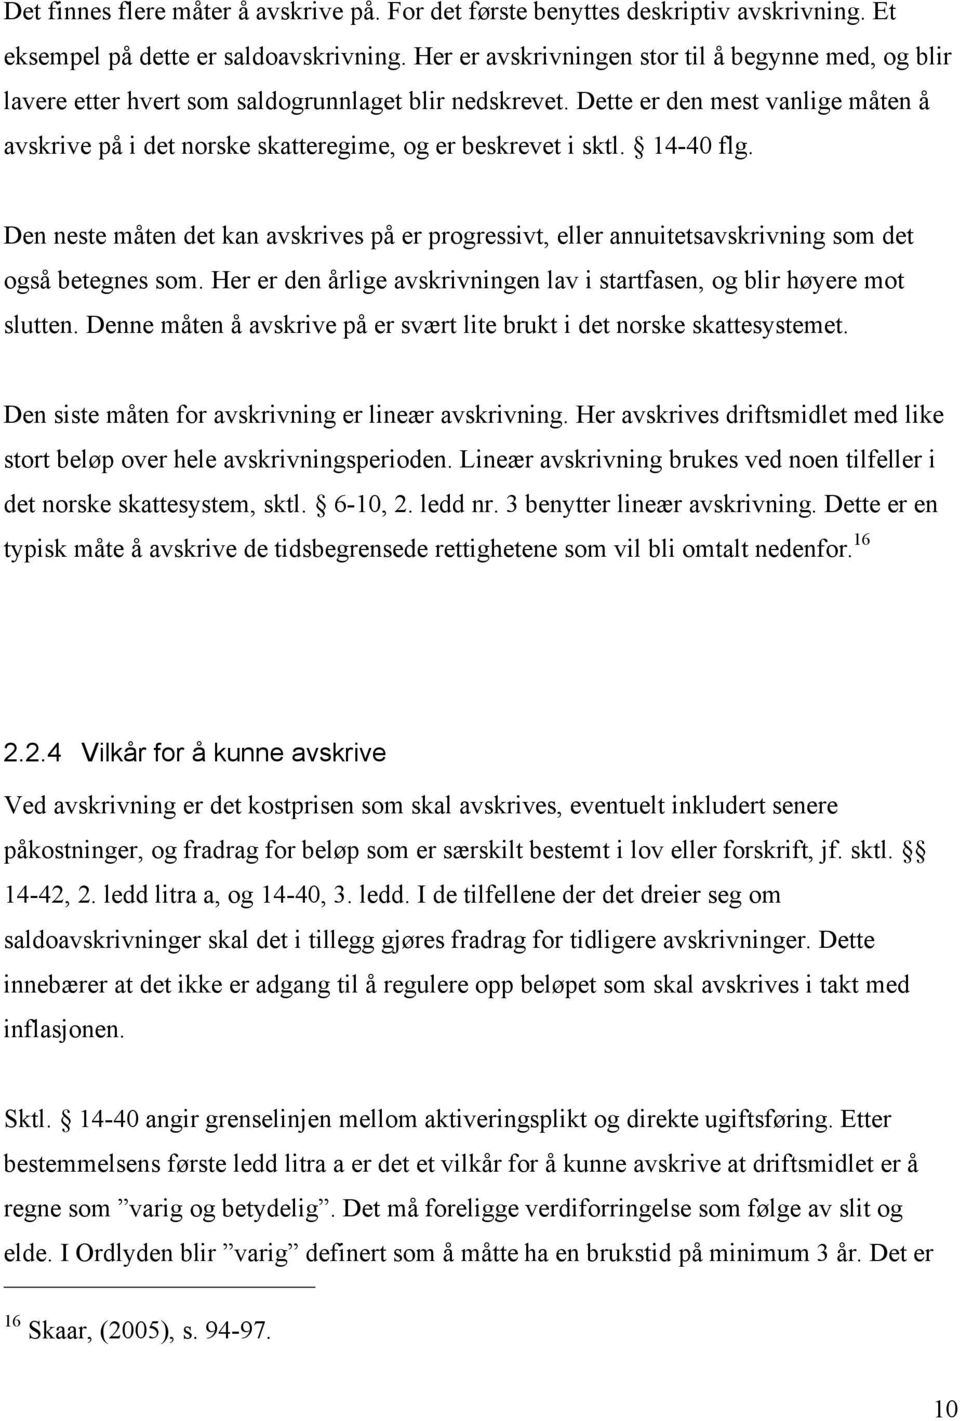 Dette er den mest vanlige måten å avskrive på i det norske skatteregime, og er beskrevet i sktl. 14-40 flg.